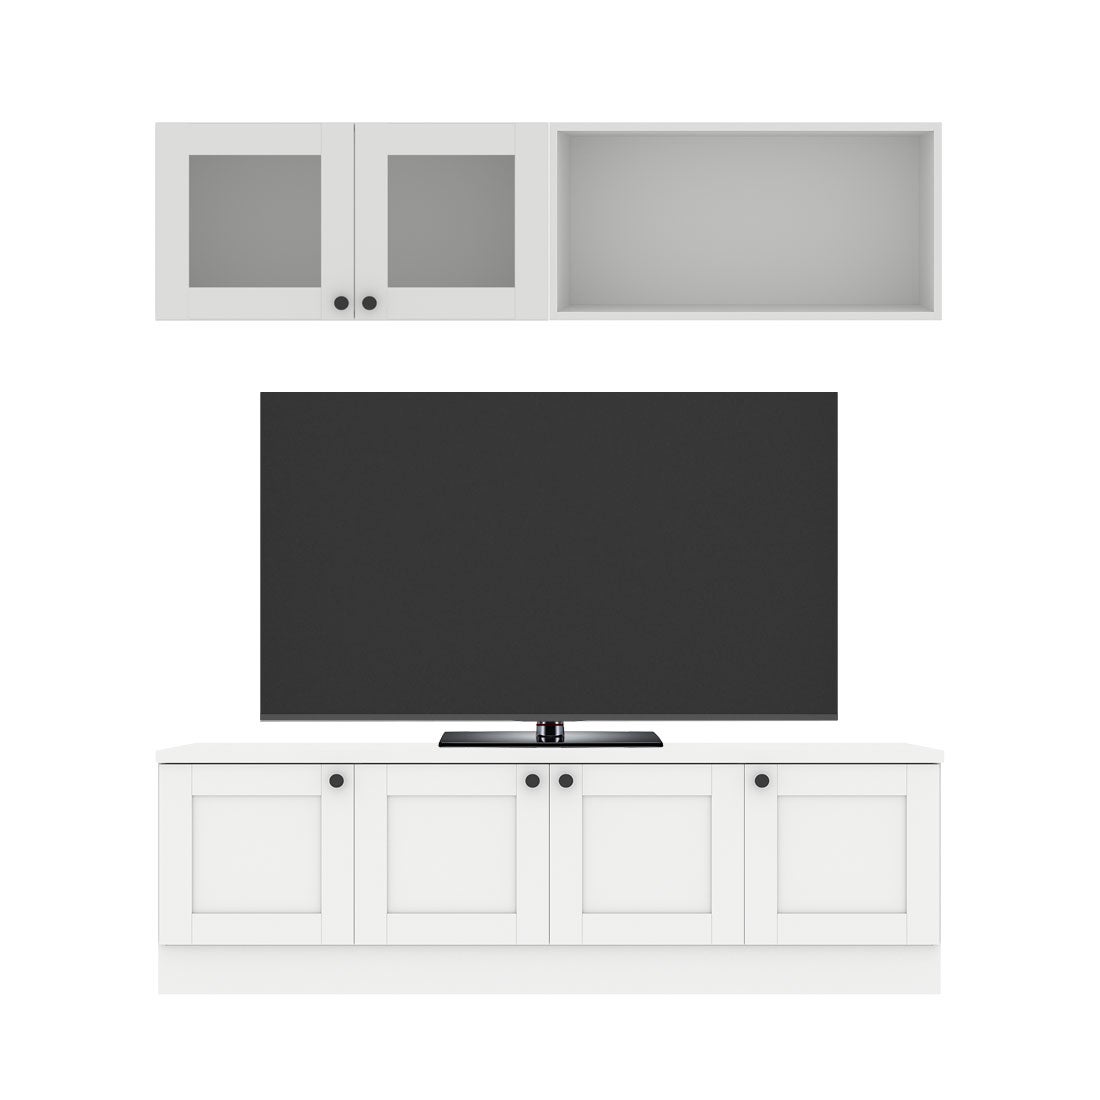 ชุดวางทีวีและตู้โชว์ ขนาด 160 ซม. รุ่น Contini Plus สีขาว01